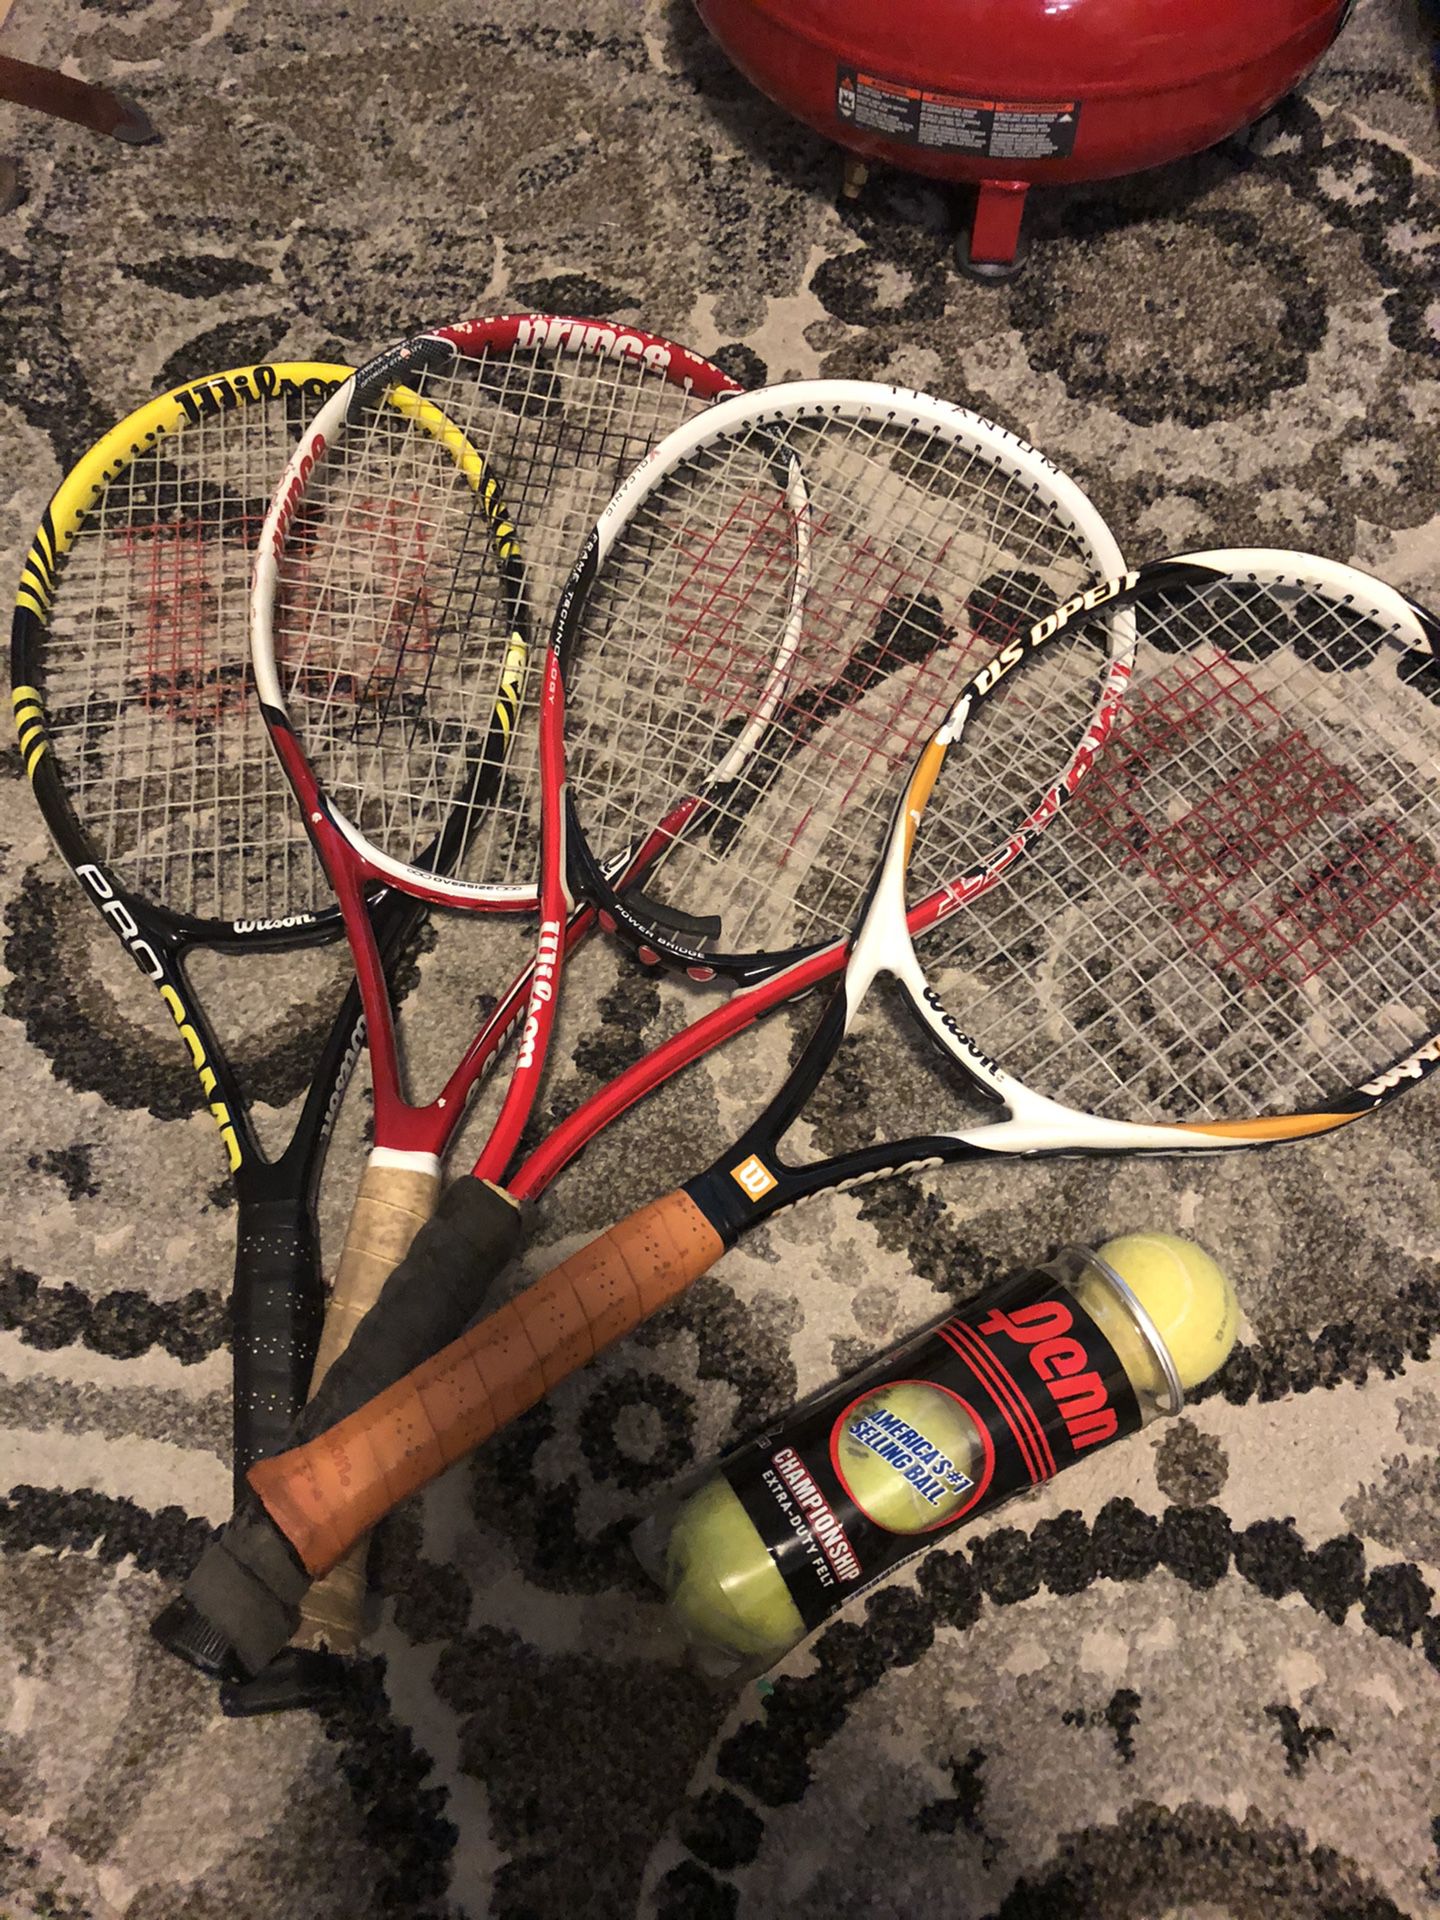 Tennis rackets & Tennis balls